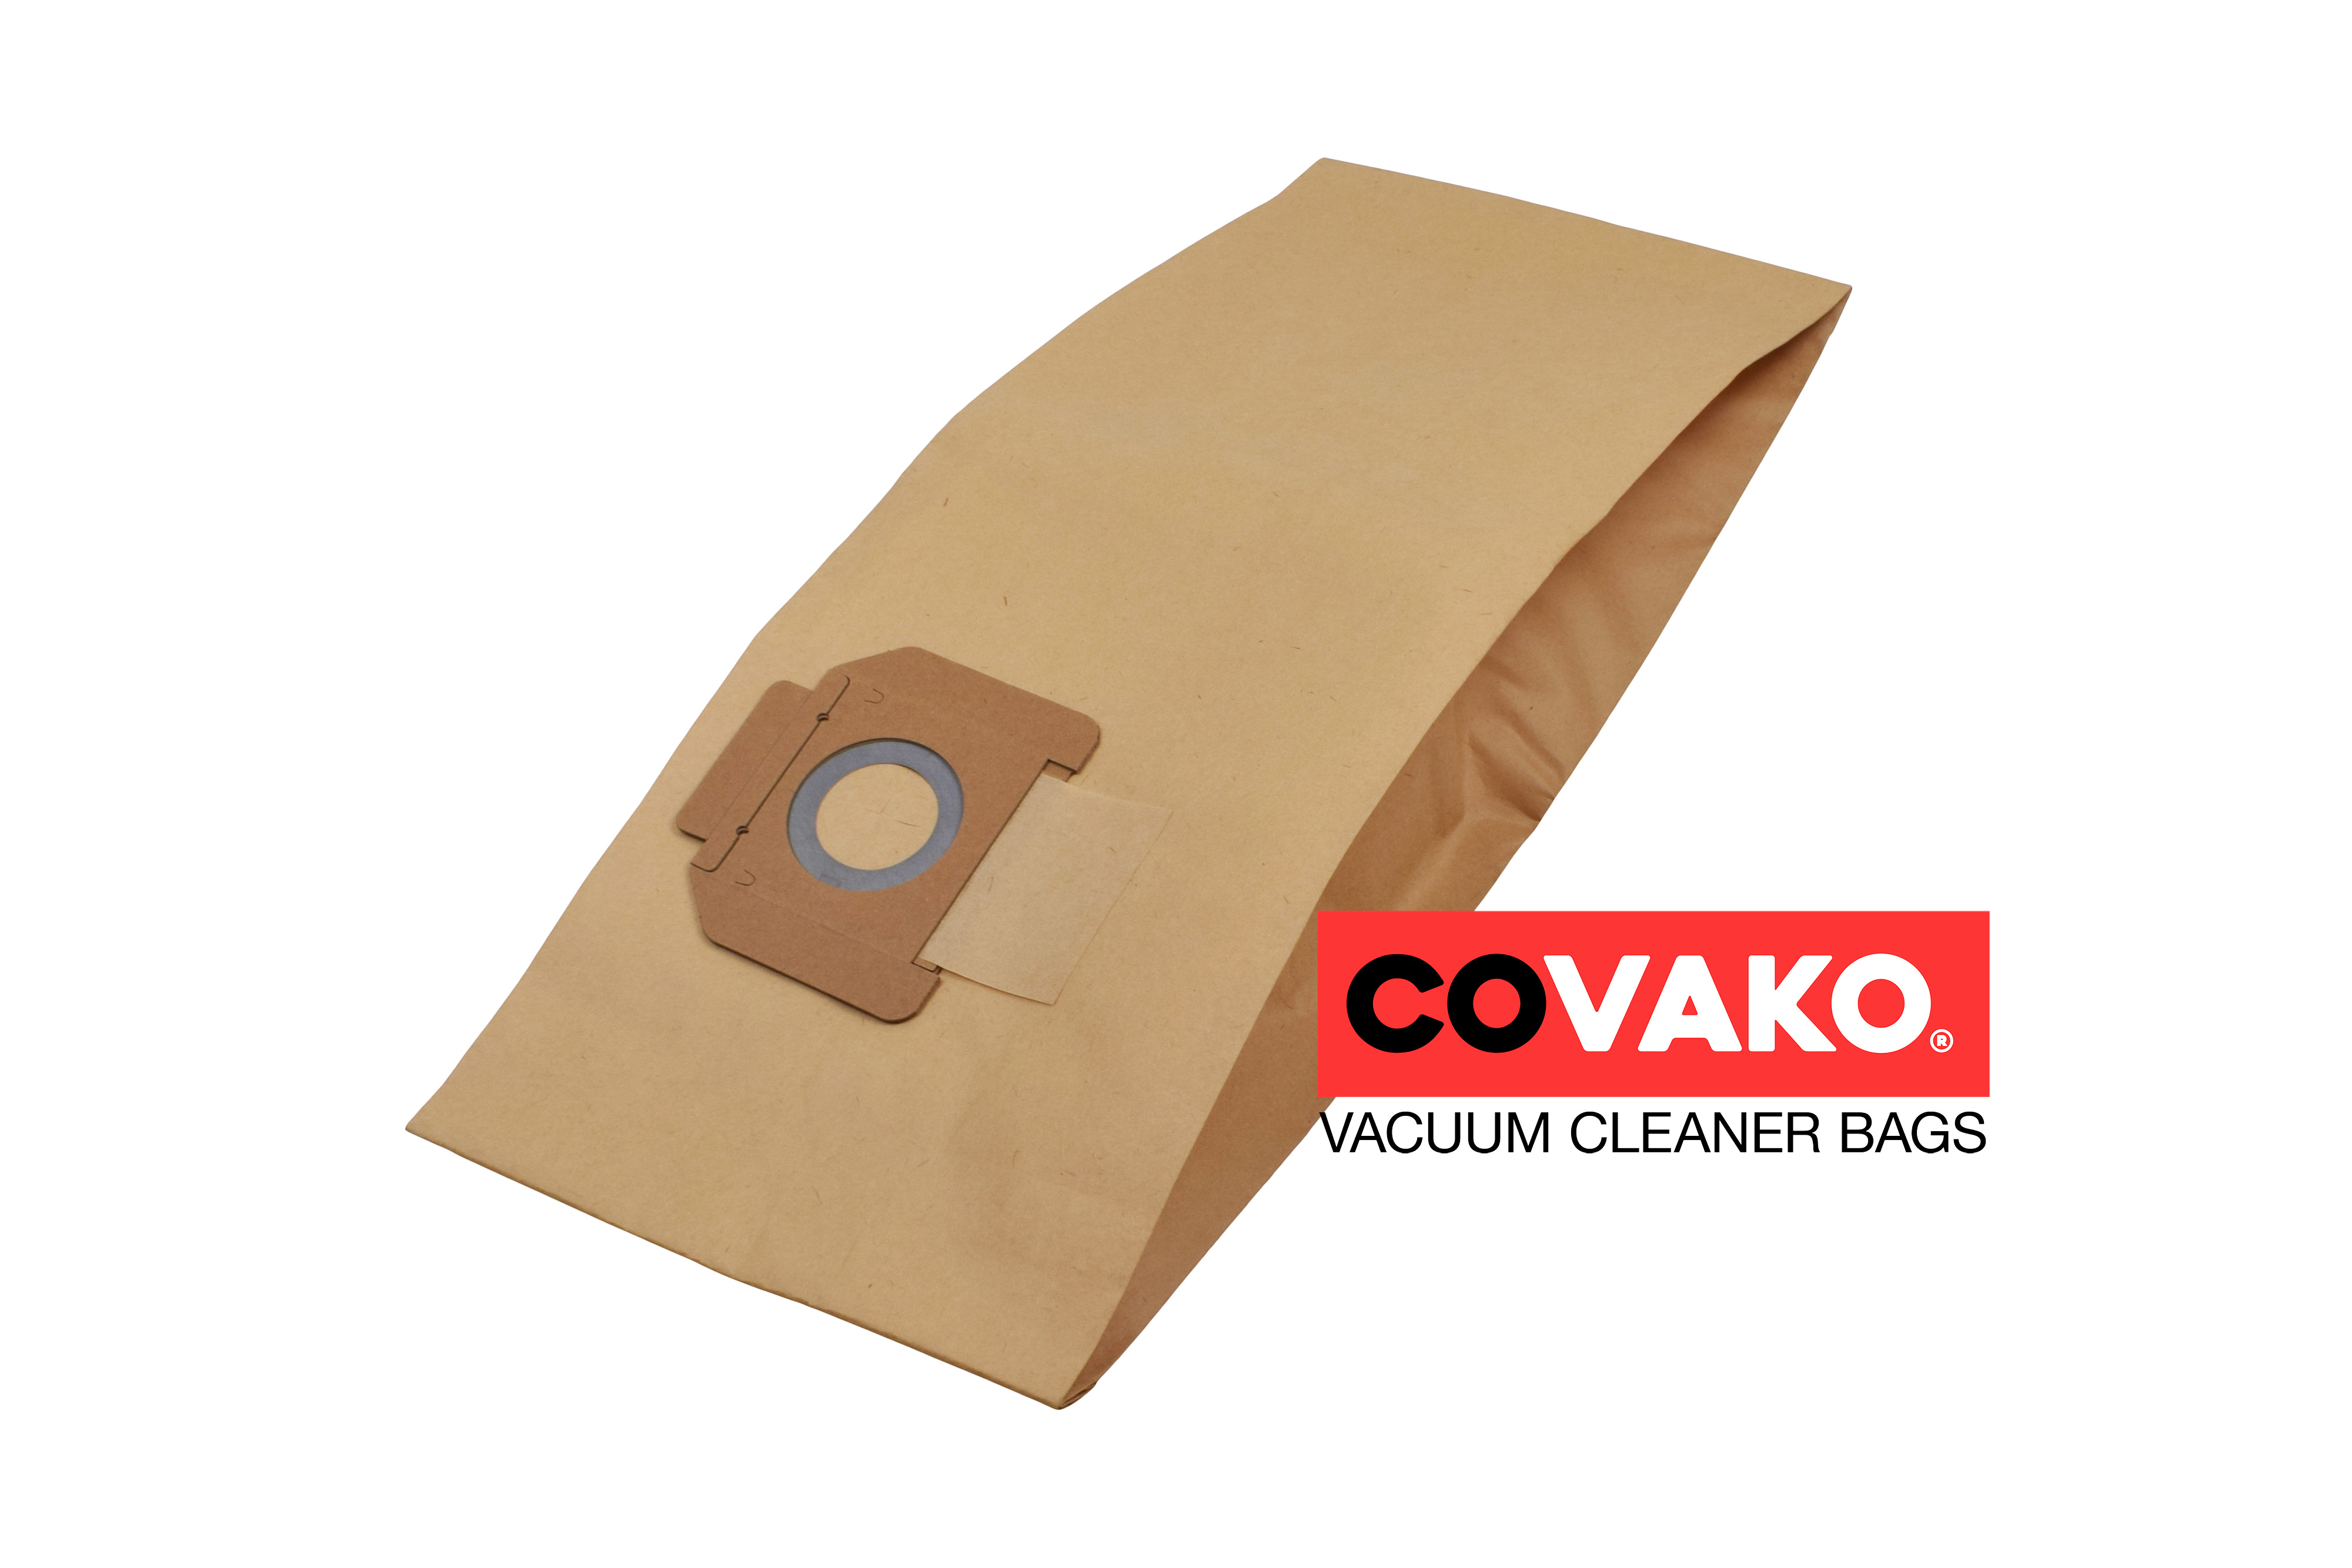 Alto IVB 3 / Paper - Alto vacuum cleaner bags